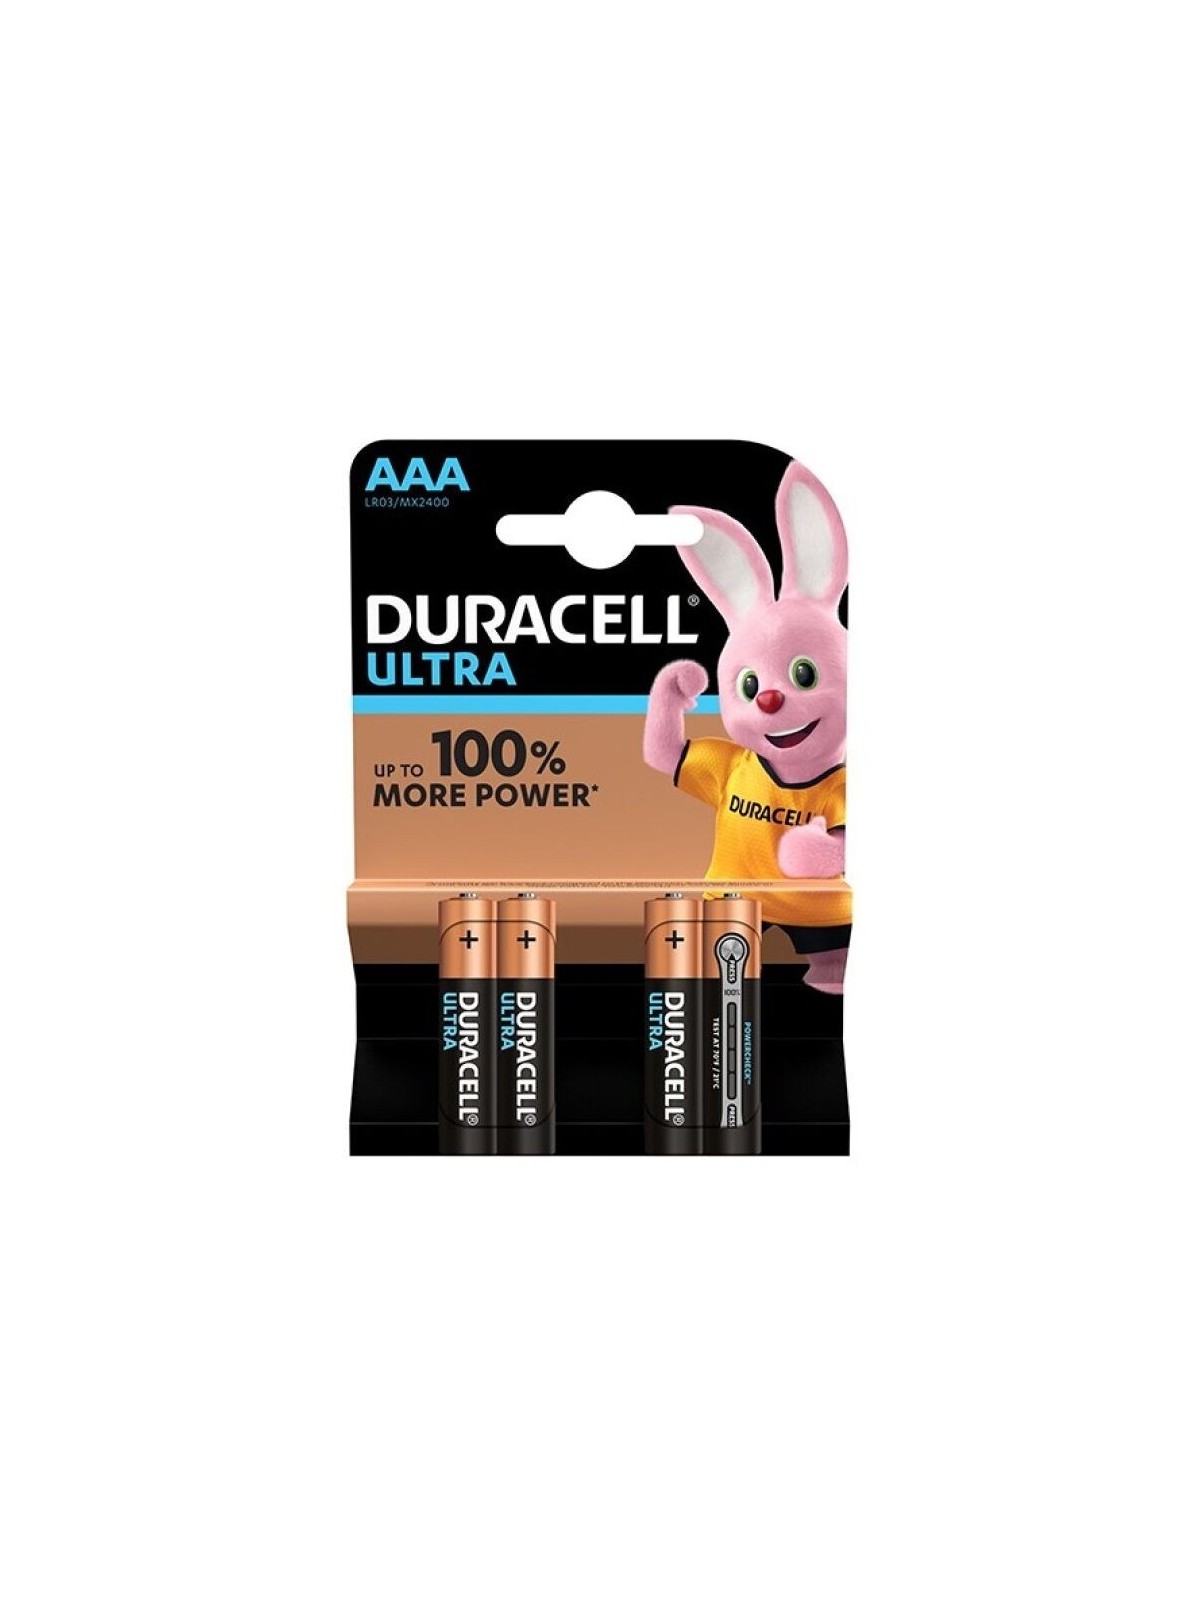 Duracell Ultra Power Pila Alcalina AAA LR03 Blíster*4 - Comprar Pilas y baterías Duracell - Pilas & baterías (1)